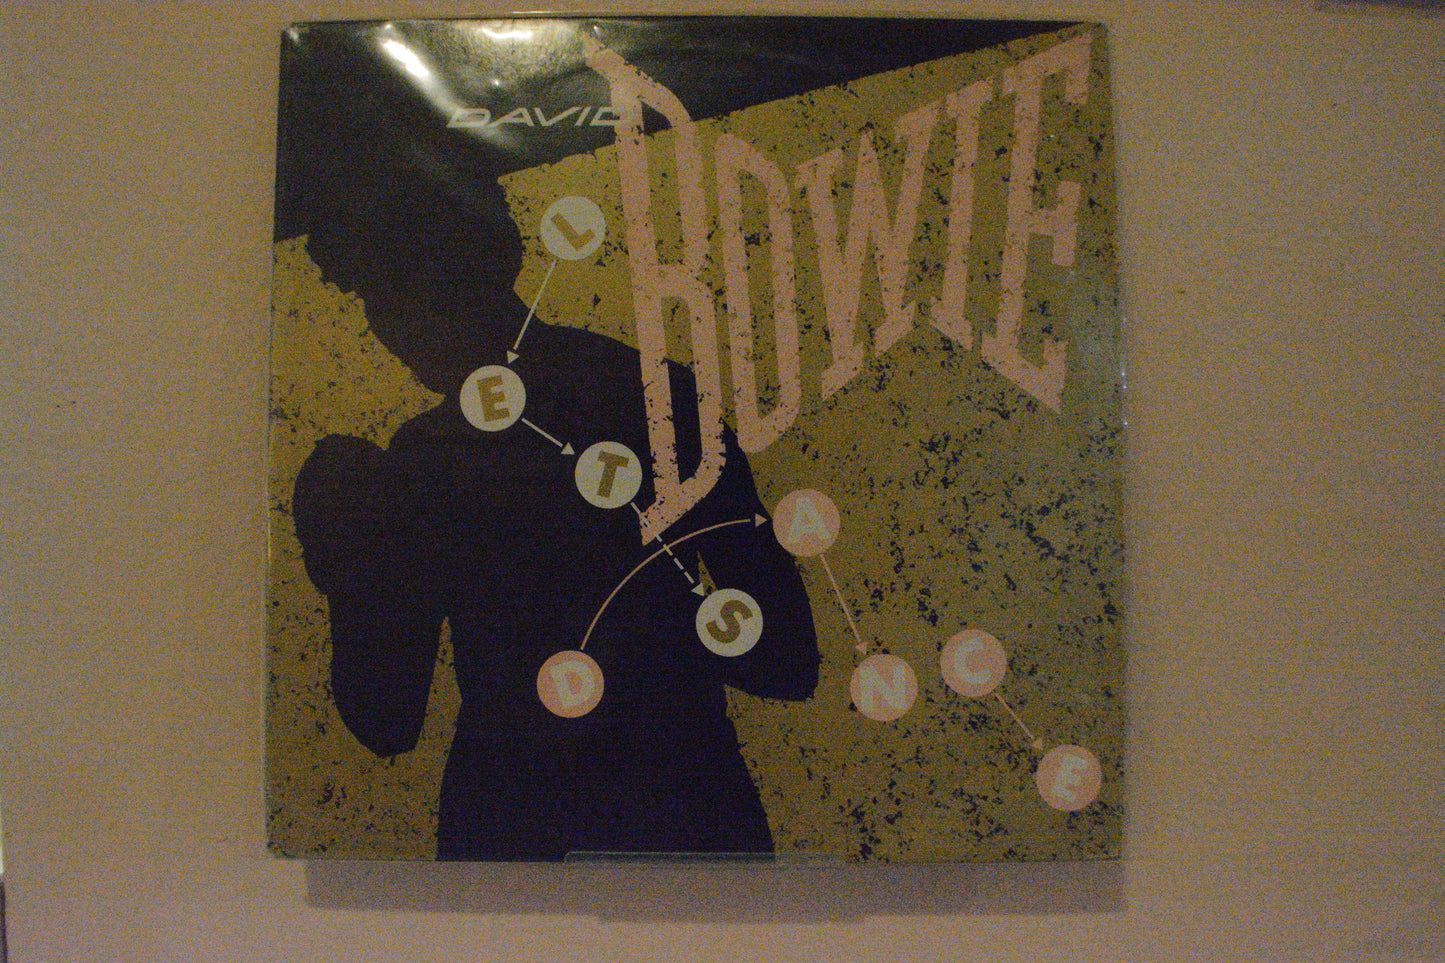 David Bowie - Let's Dance LP